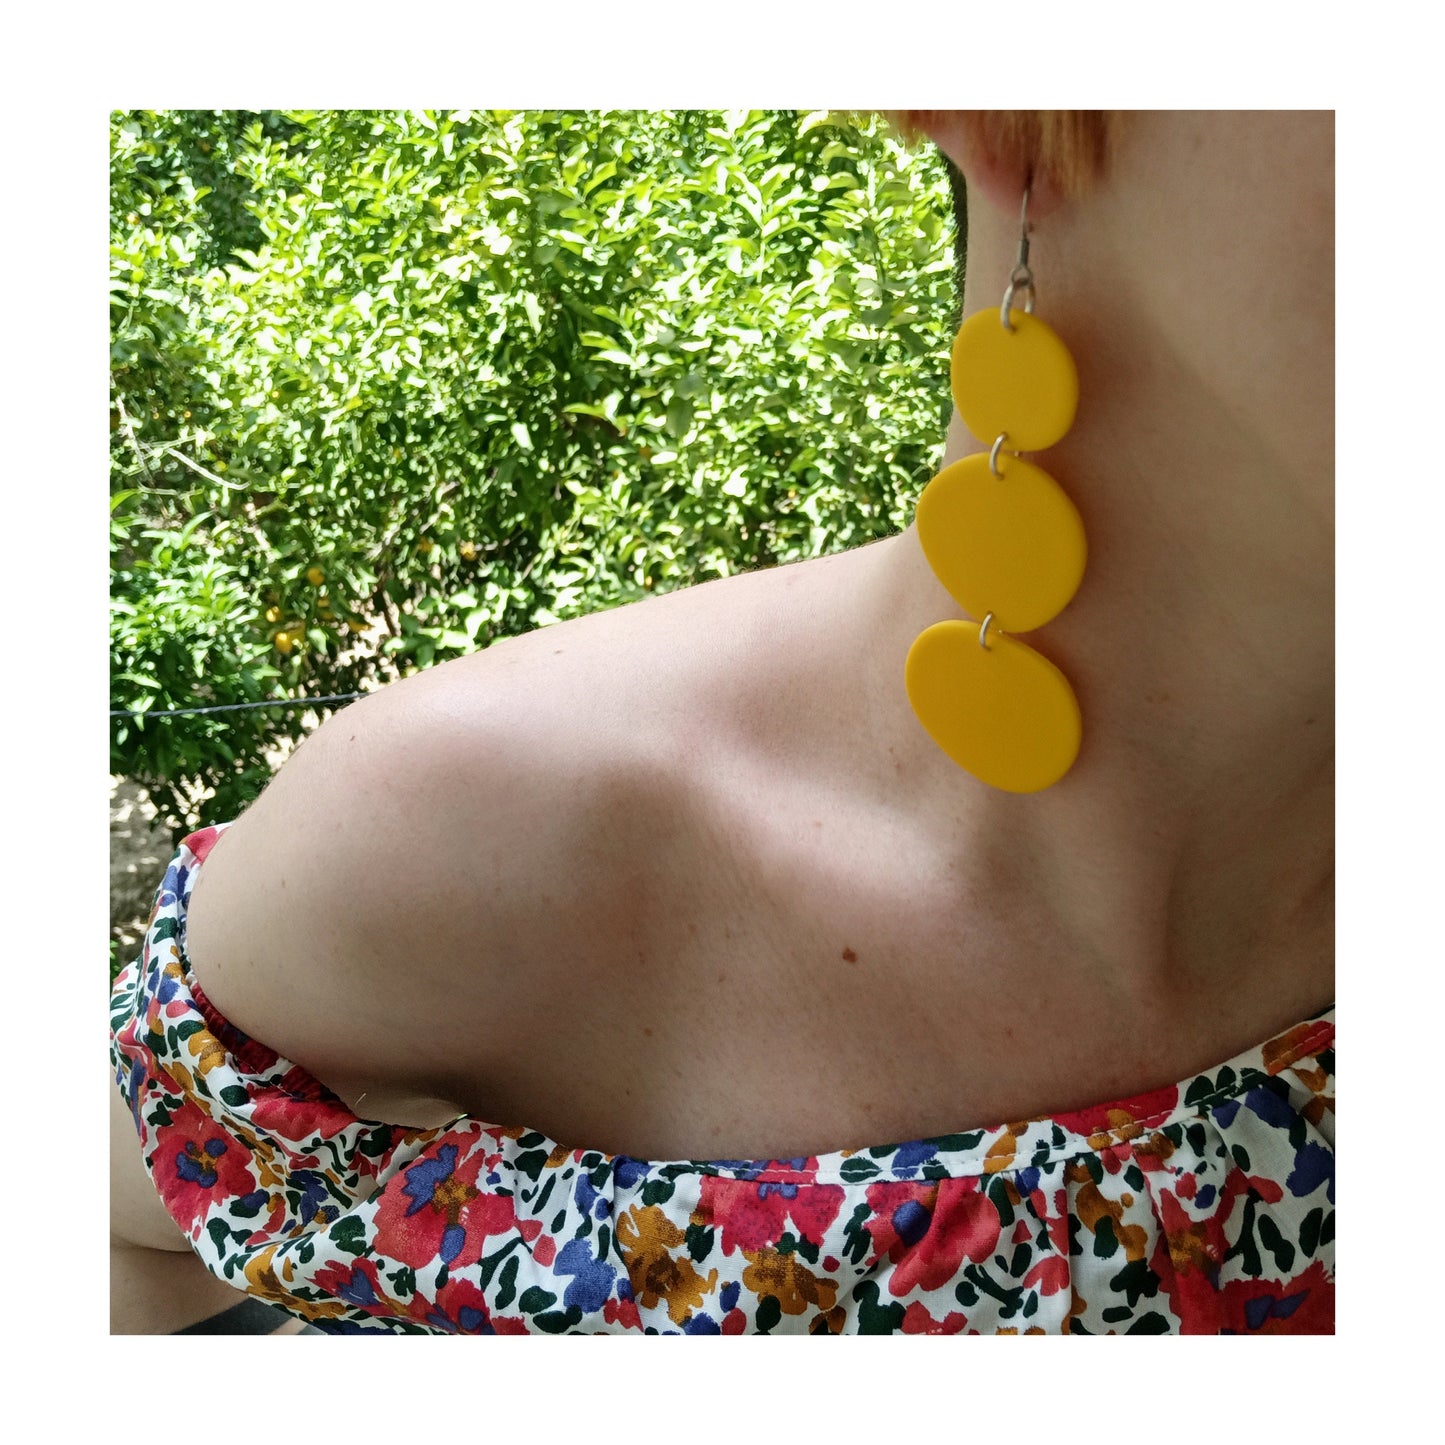 PEBBLES yellow long earrings